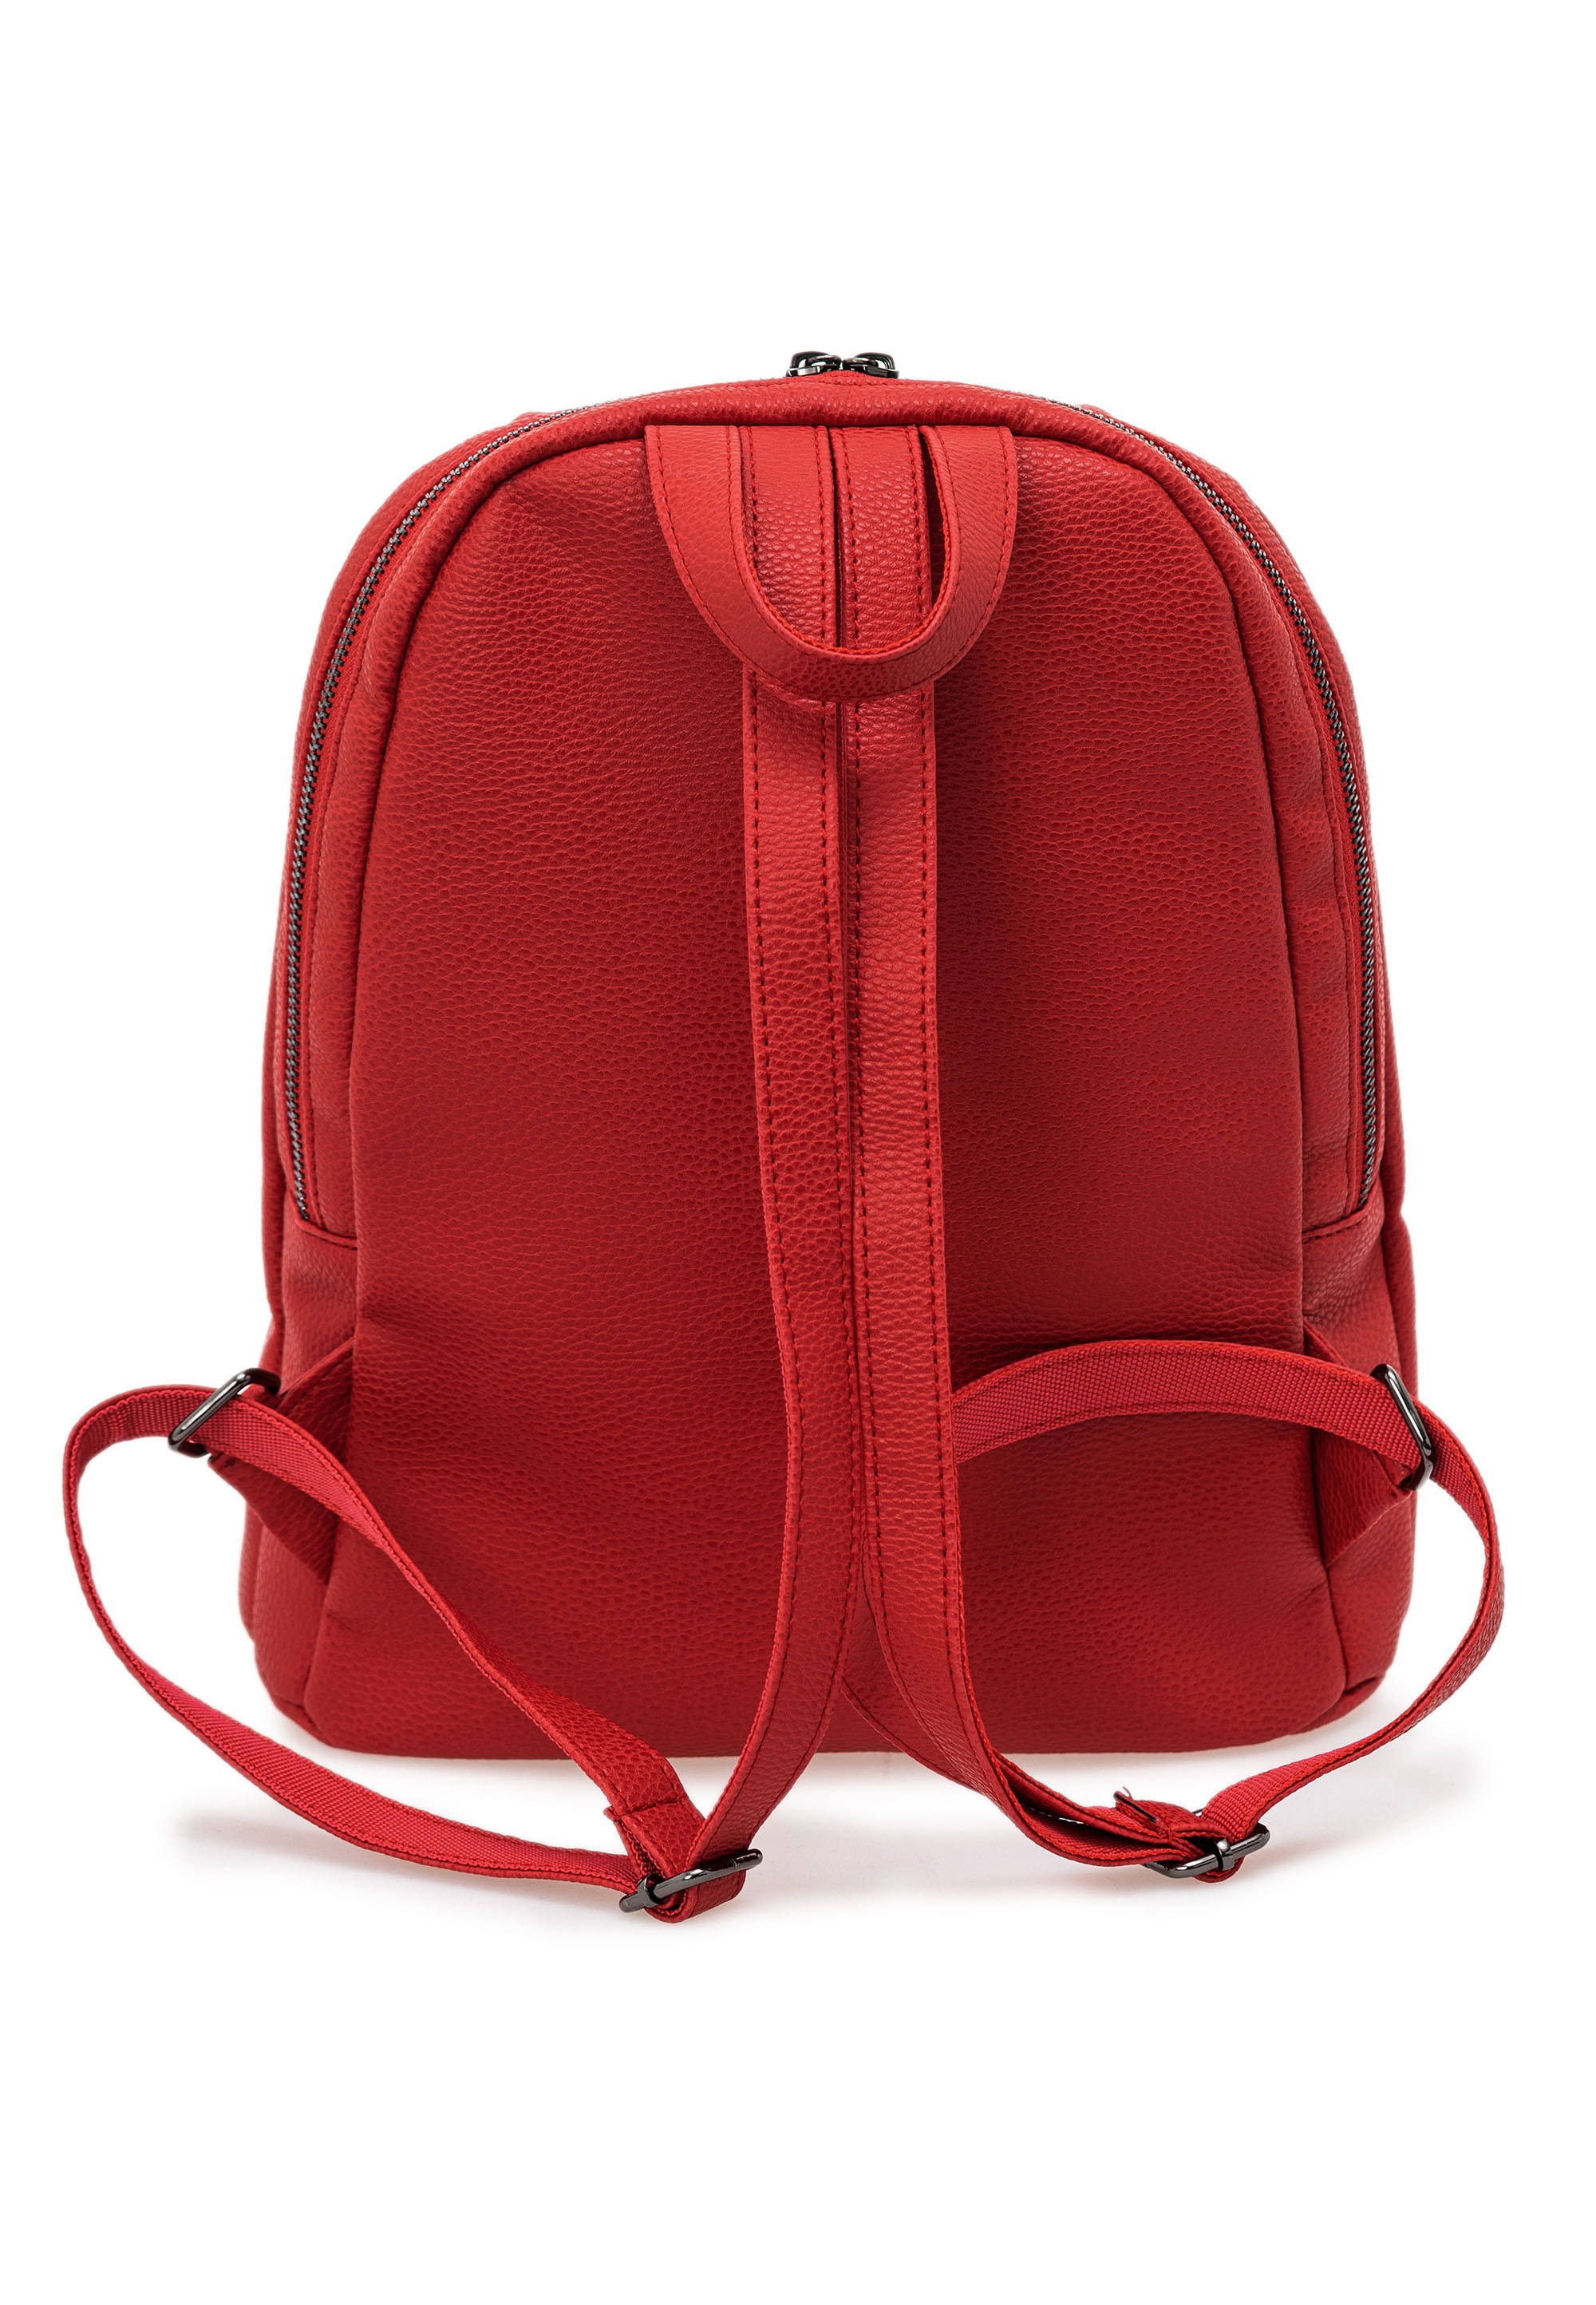 Cipo & Baxx Cityrucksack, mit praktischen Seitentaschen